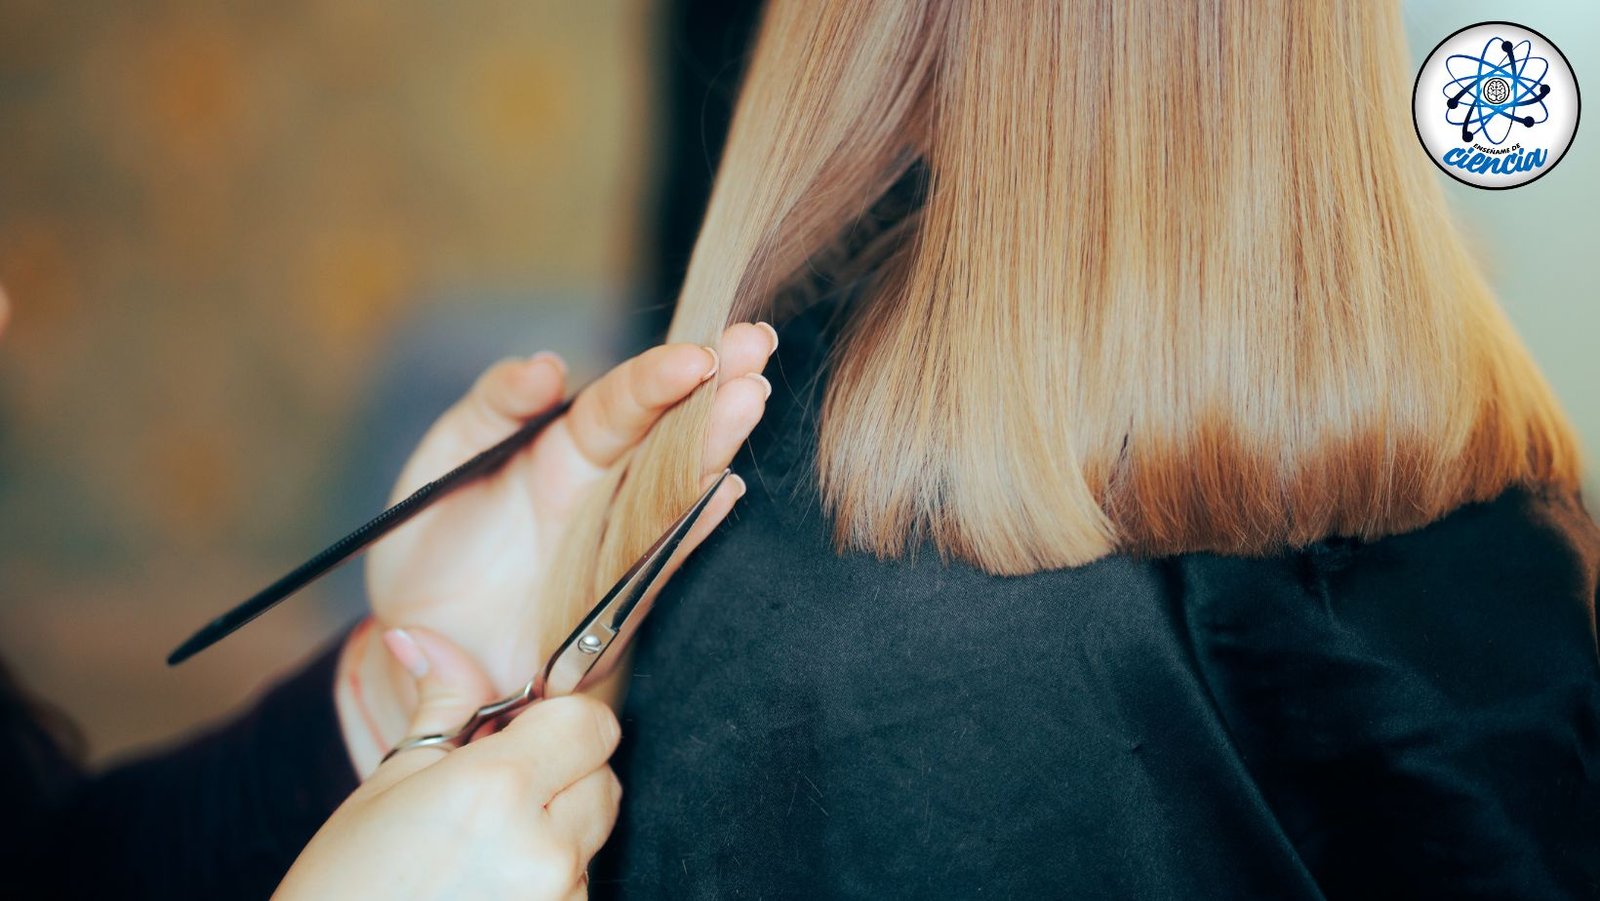 Cuidados esenciales: frecuencia óptima para cortar el cabello para su salud y apariencia